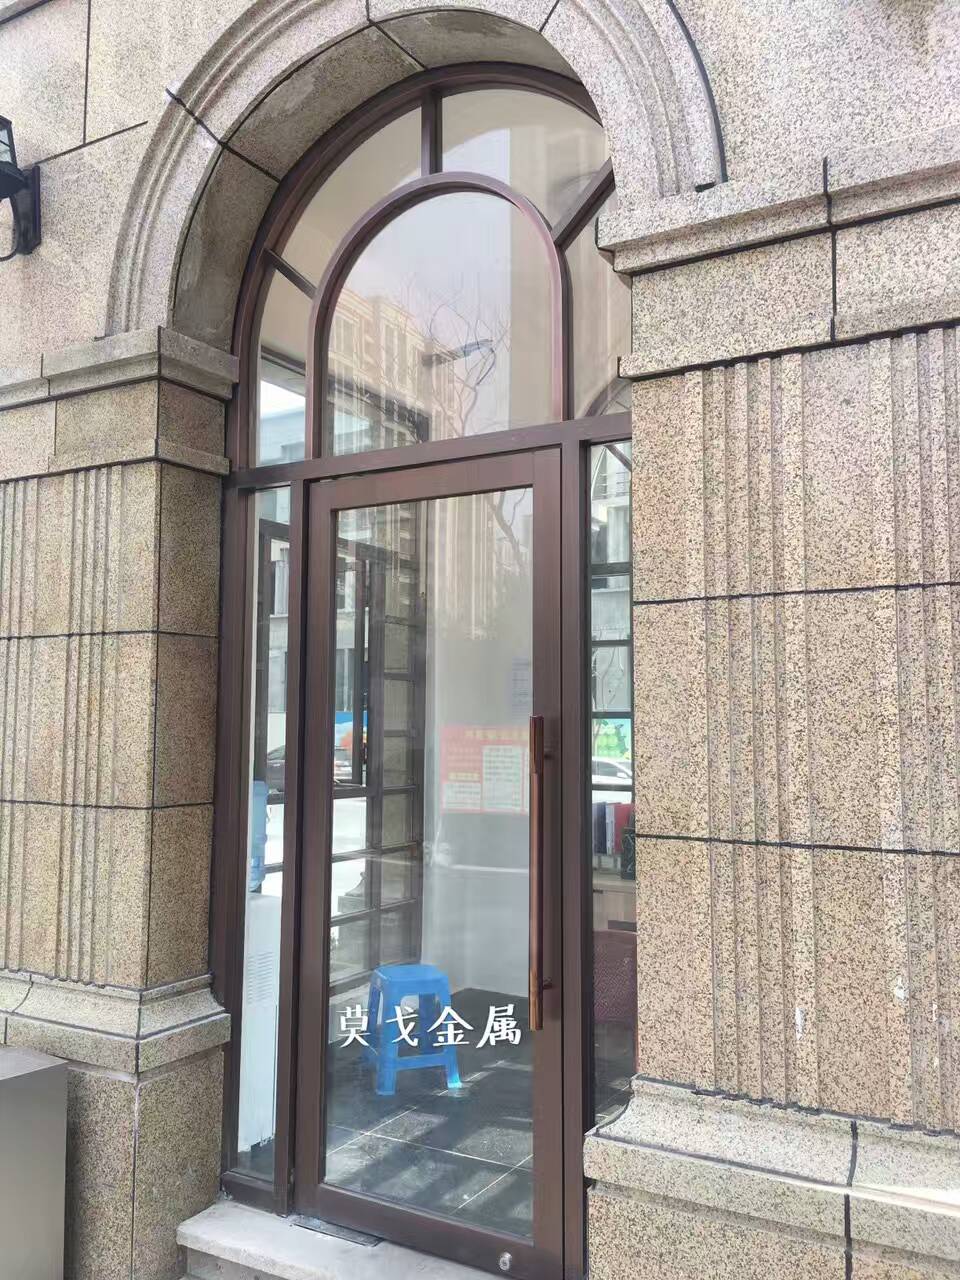 酒店/會所做舊發黑紅古銅不銹鋼玻璃門窗